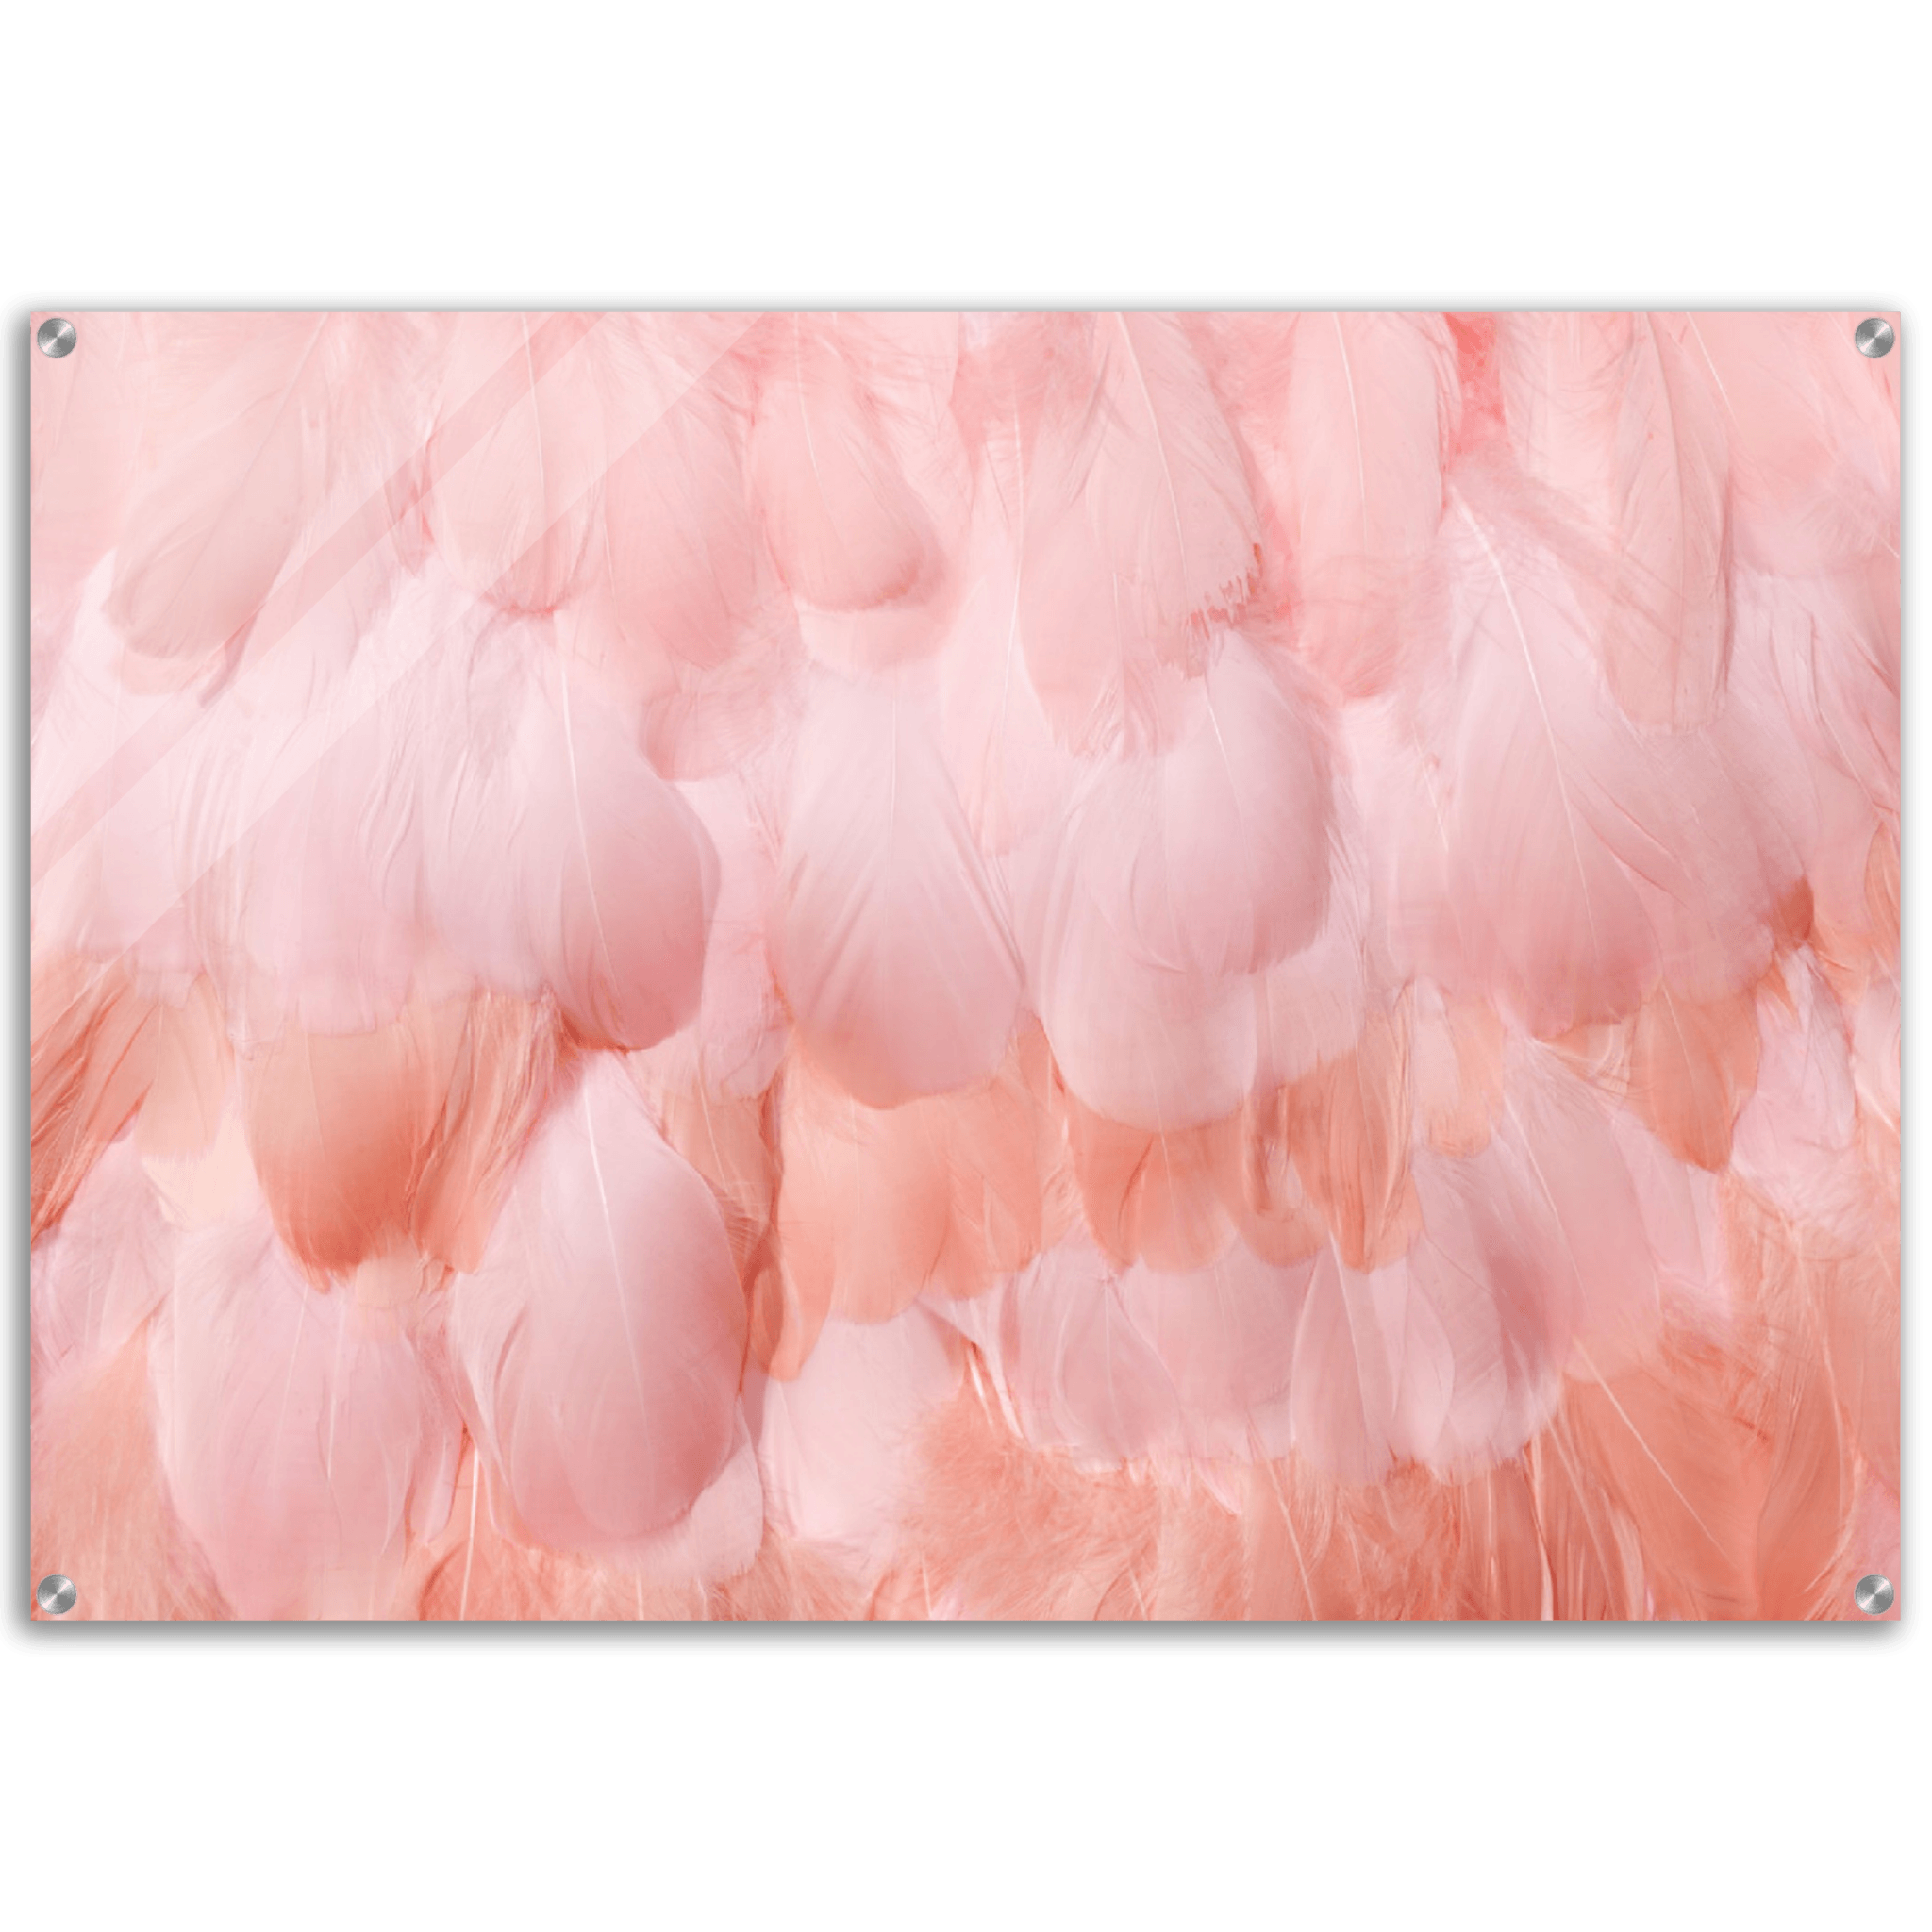 Lush Layers: Textured Pink Feathers Acrylic Glass Wall Art - Wallfix